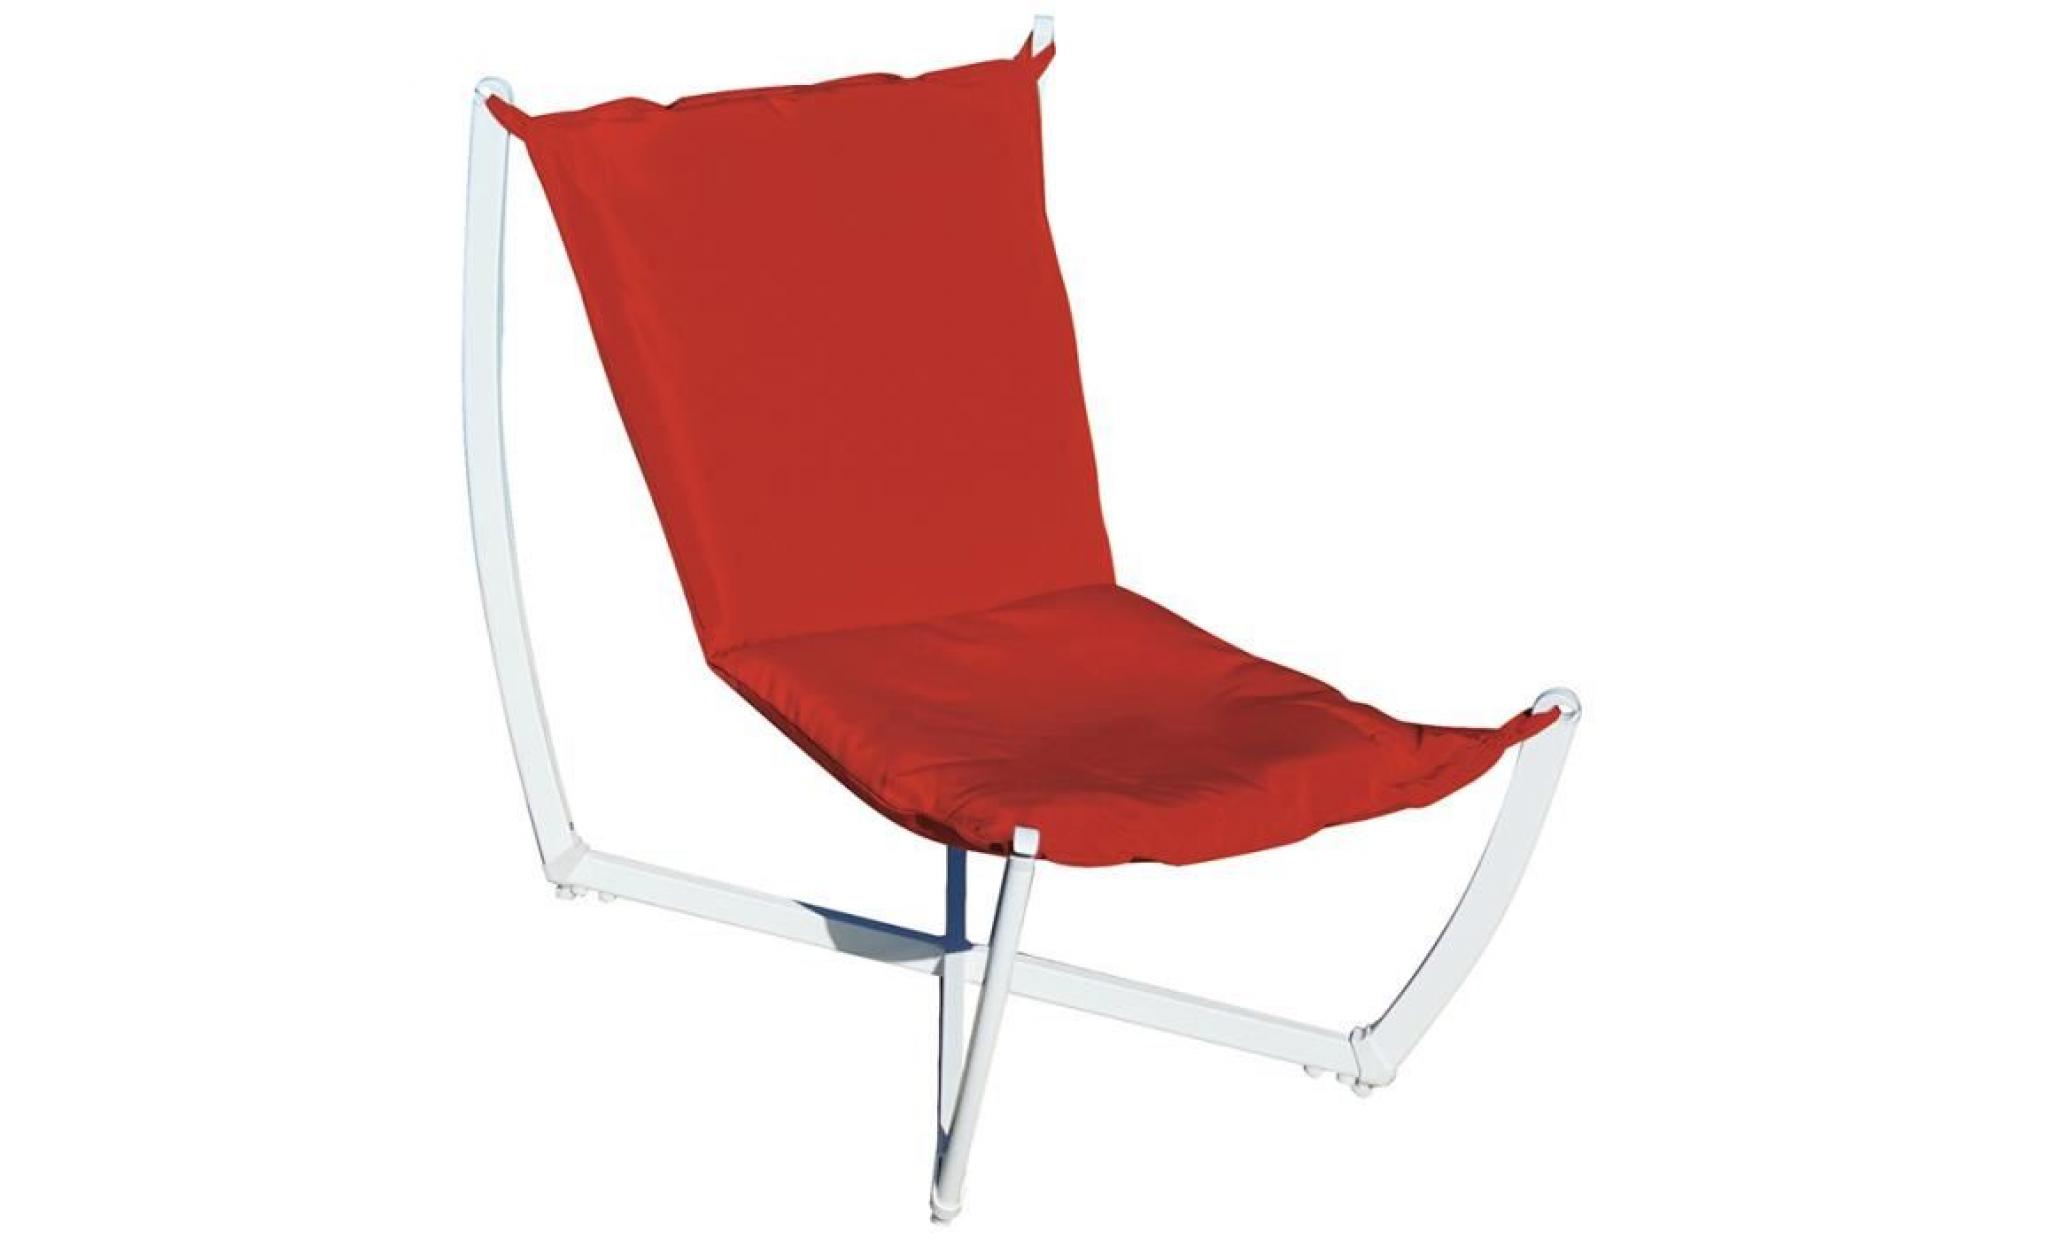 fauteuil de jardin en fer époxy blanc, coloris rouge foncé   dim : h 85 x l 90 x p 70 cm